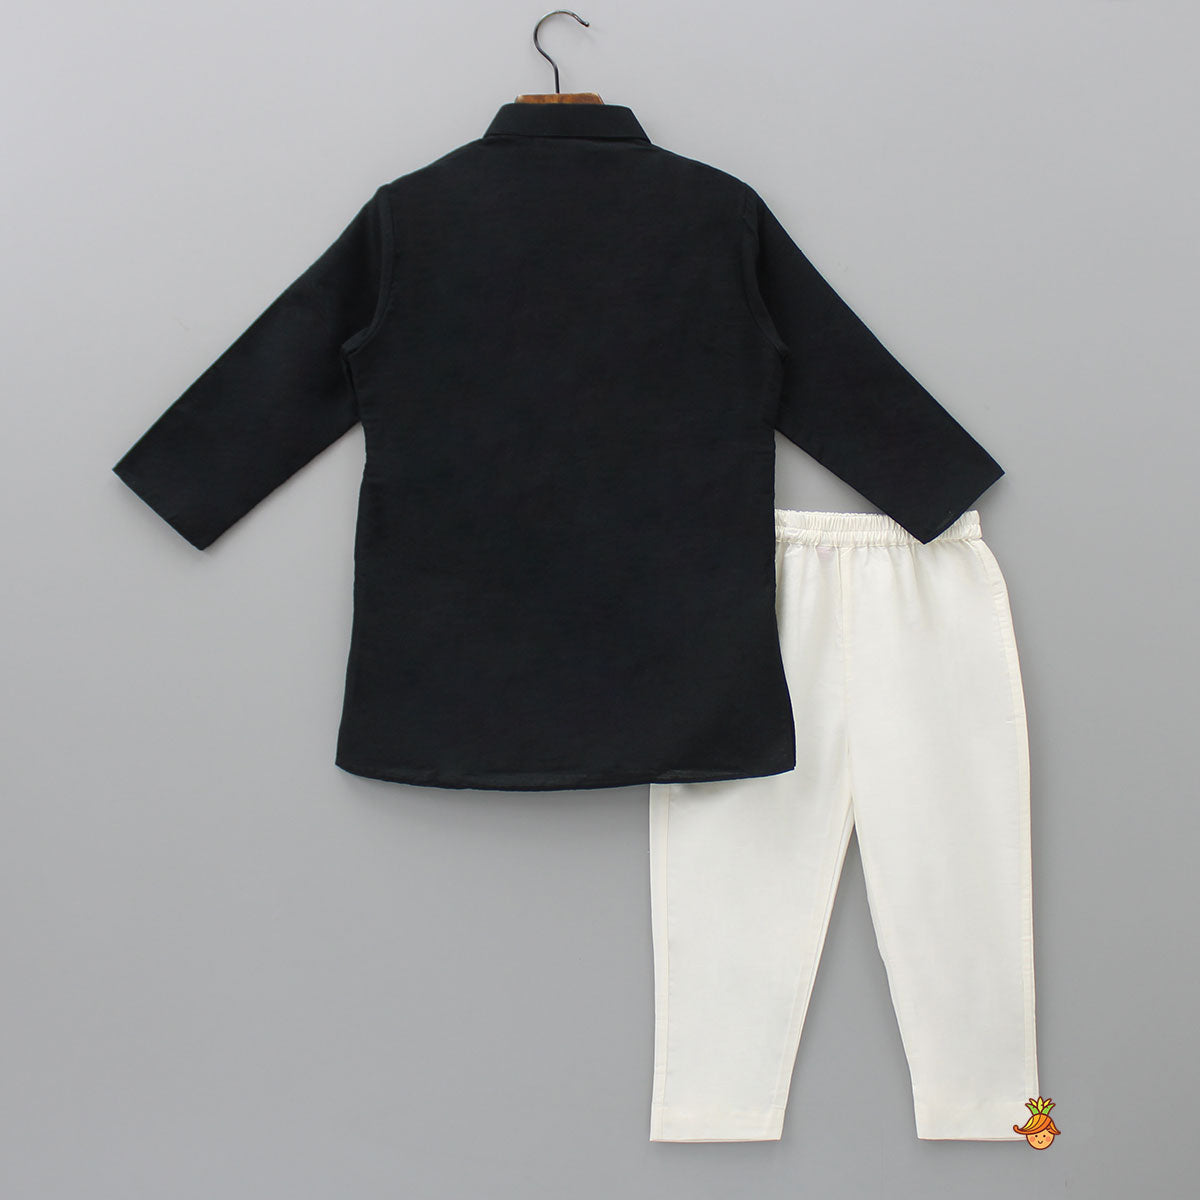 Gota Lace Detailed Jacket Style Black Kurta And Pyjama